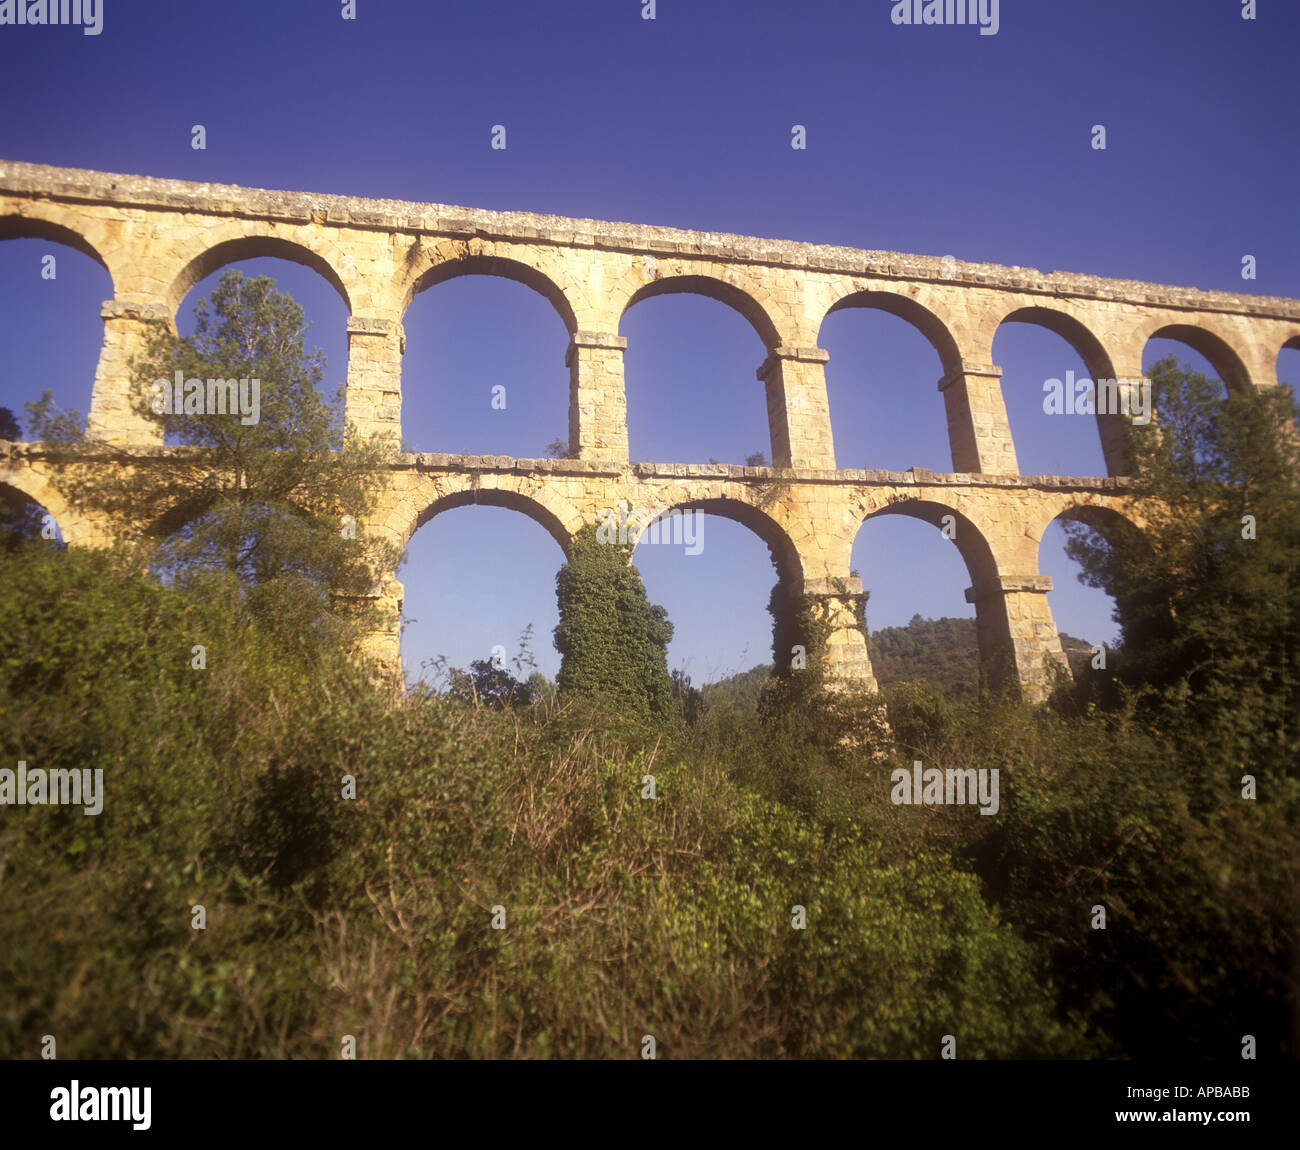 Acueducto romano Pont del Diable, cerca de Tarragona España Foto de stock